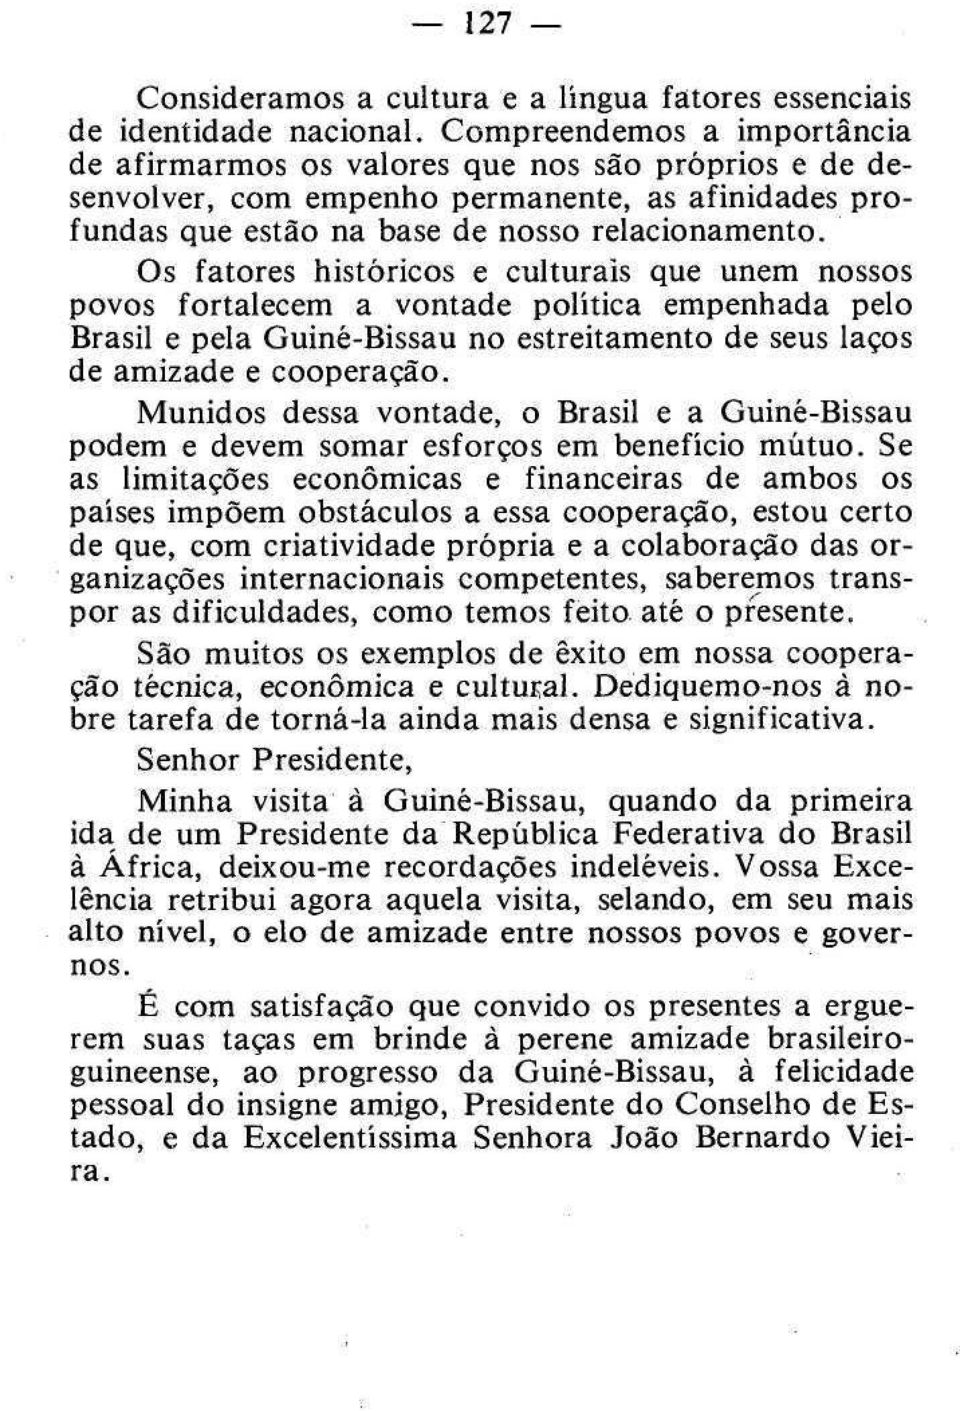 Os fatores históricos e culturais que unem nossos povos fortalecem a vontade política empenhada pelo Brasil e pela Guiné-Bissau no estreitamento de seus laços de amizade e cooperação.